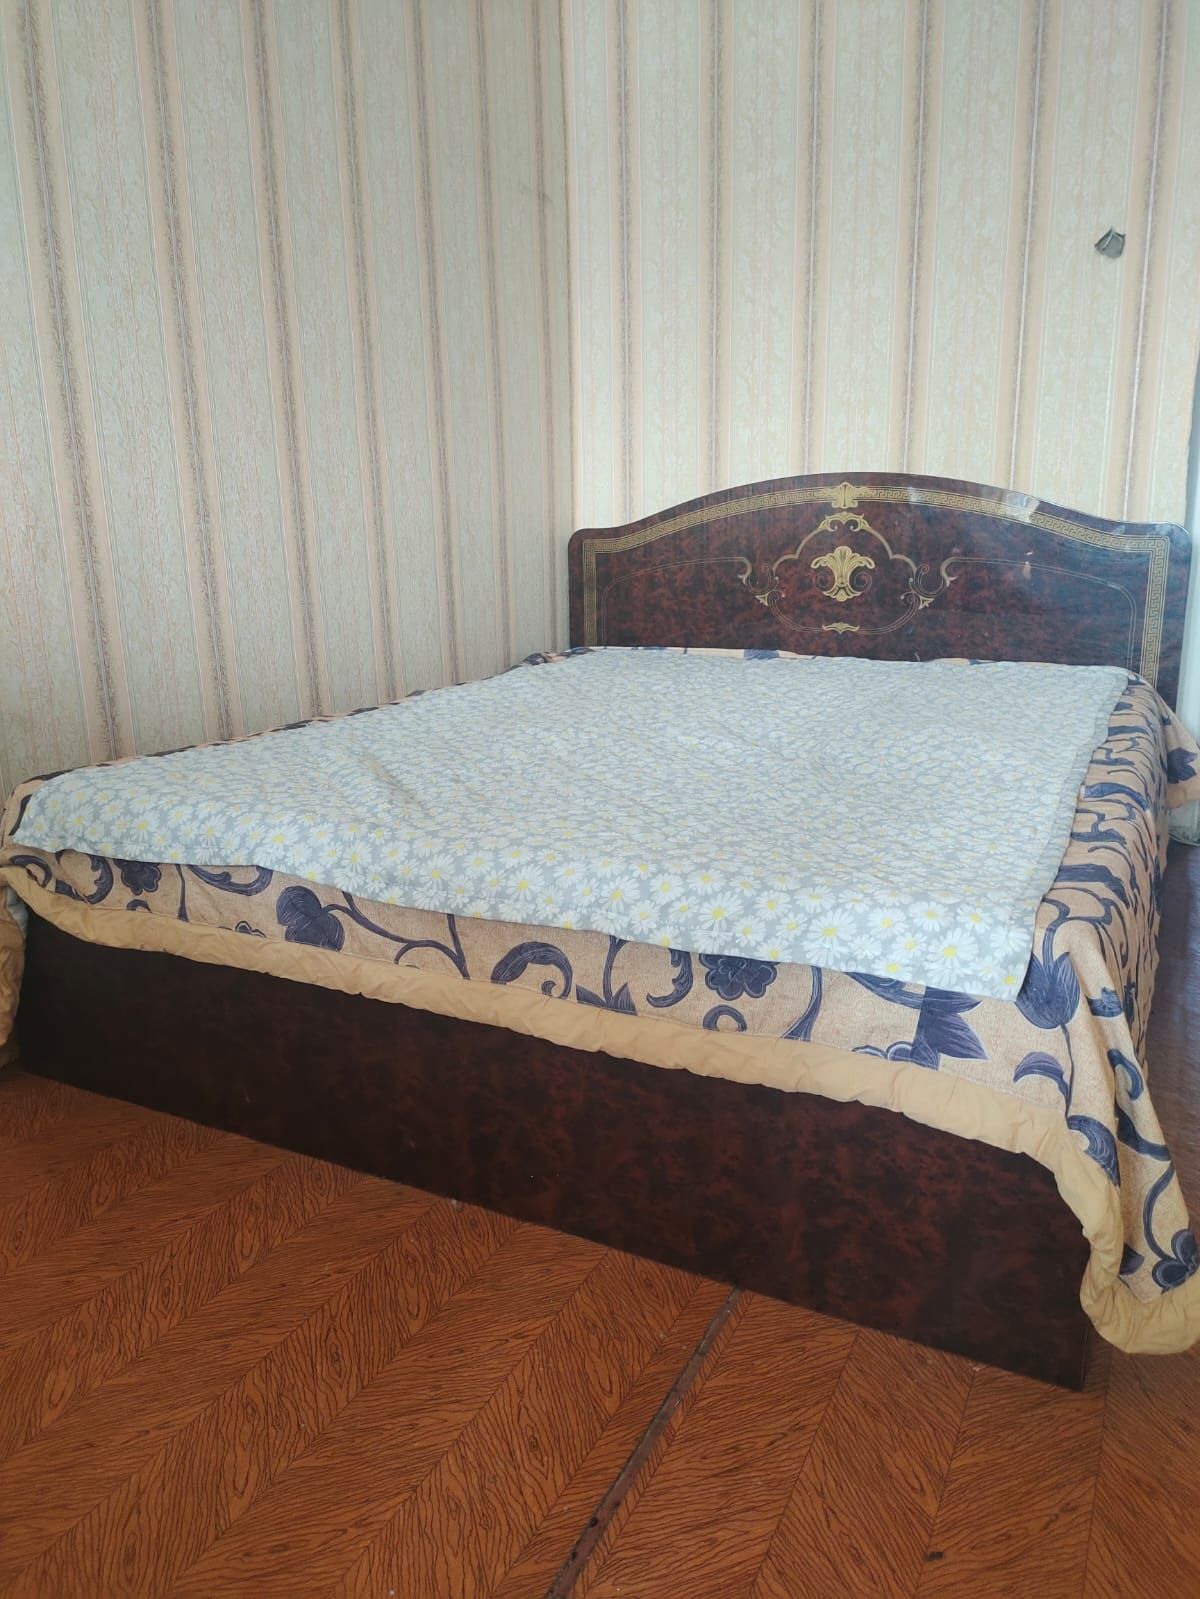 Спальный гарнитур шкаф 5 секции, двухспальняя кровать, 2 тумбочки